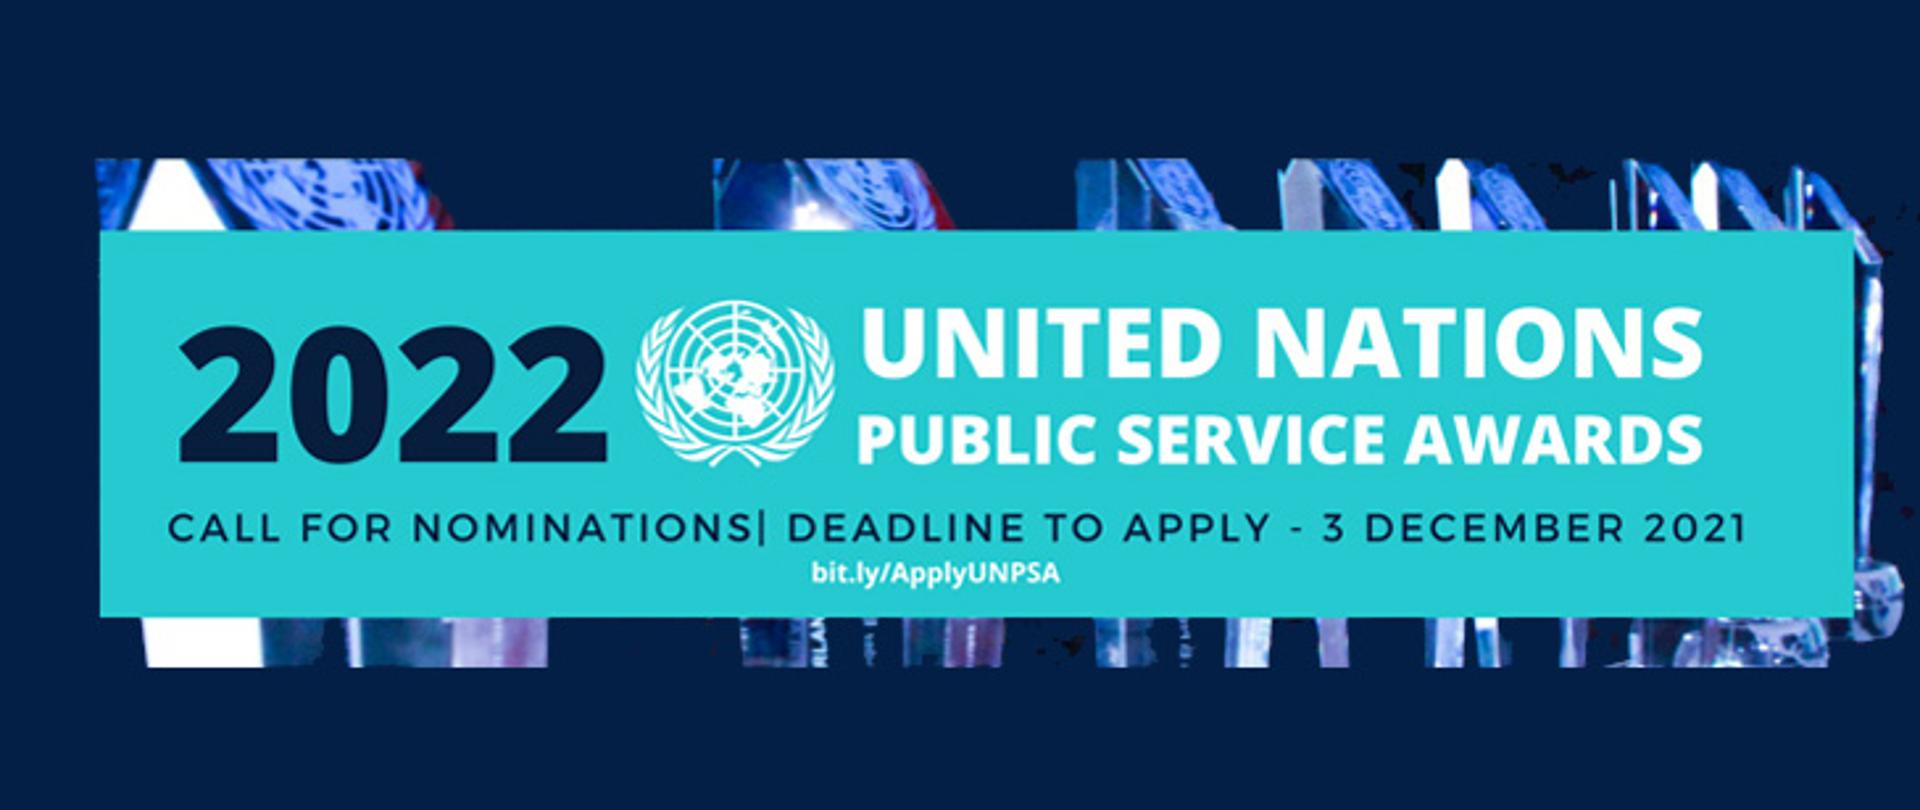 Grafika promująca nagrodę ONZ